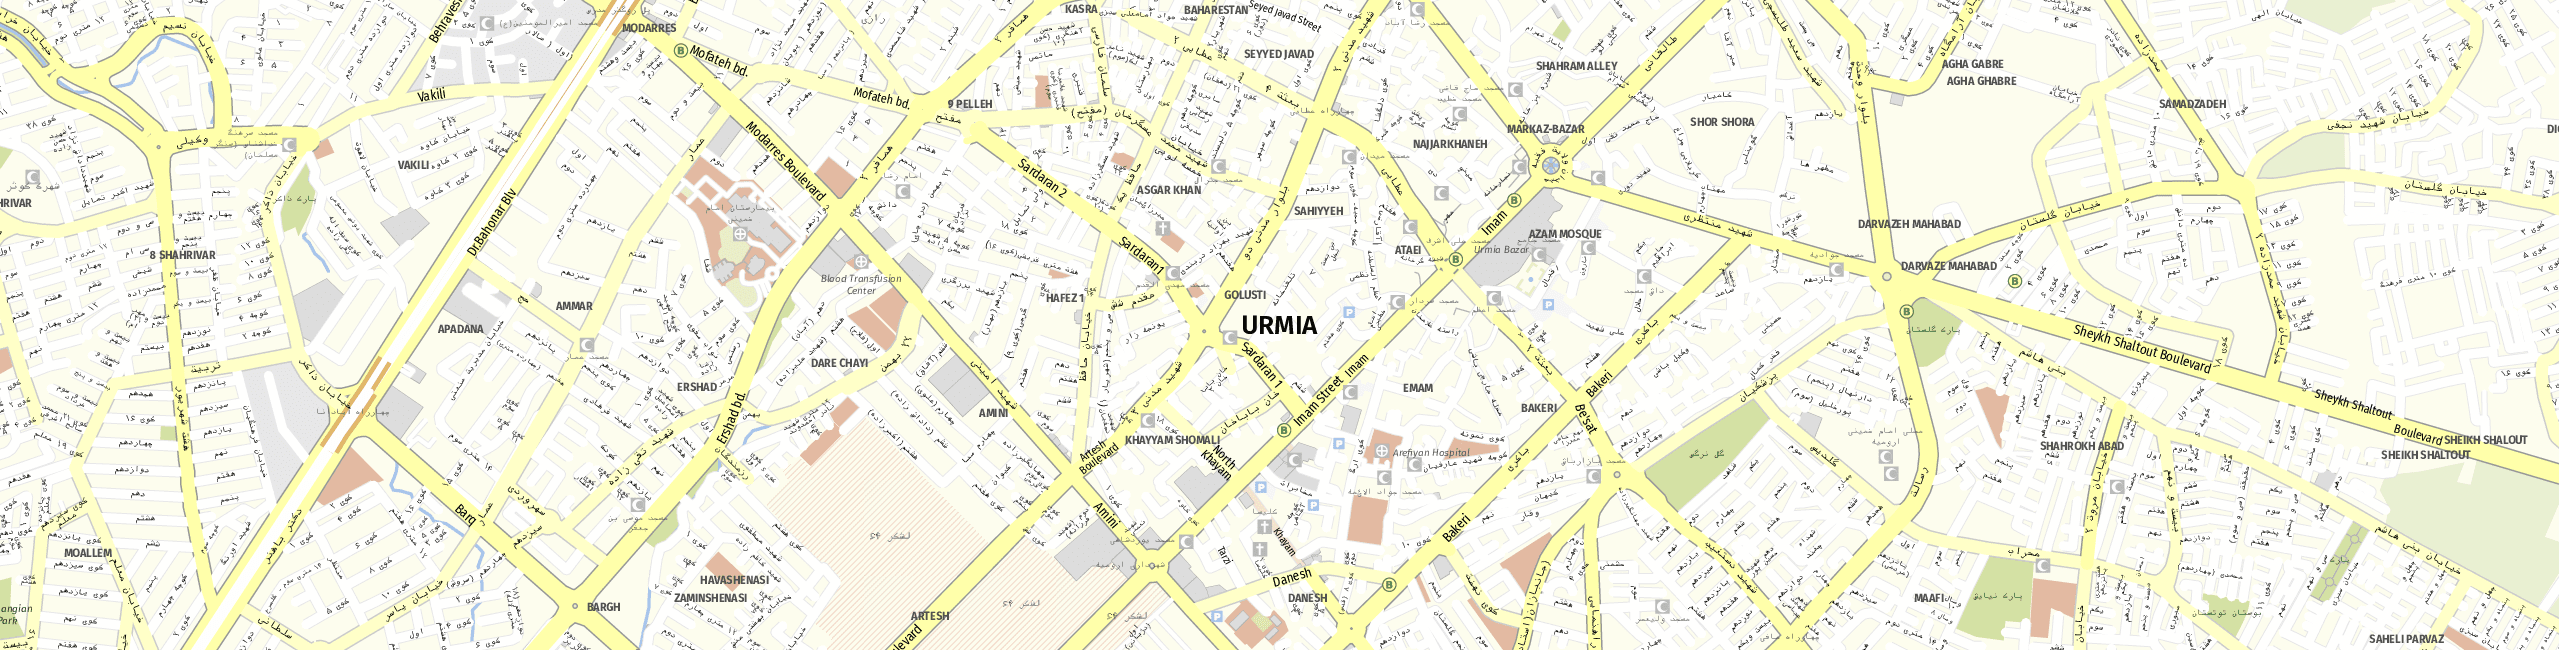 Stadtplan Urmia zum Downloaden.